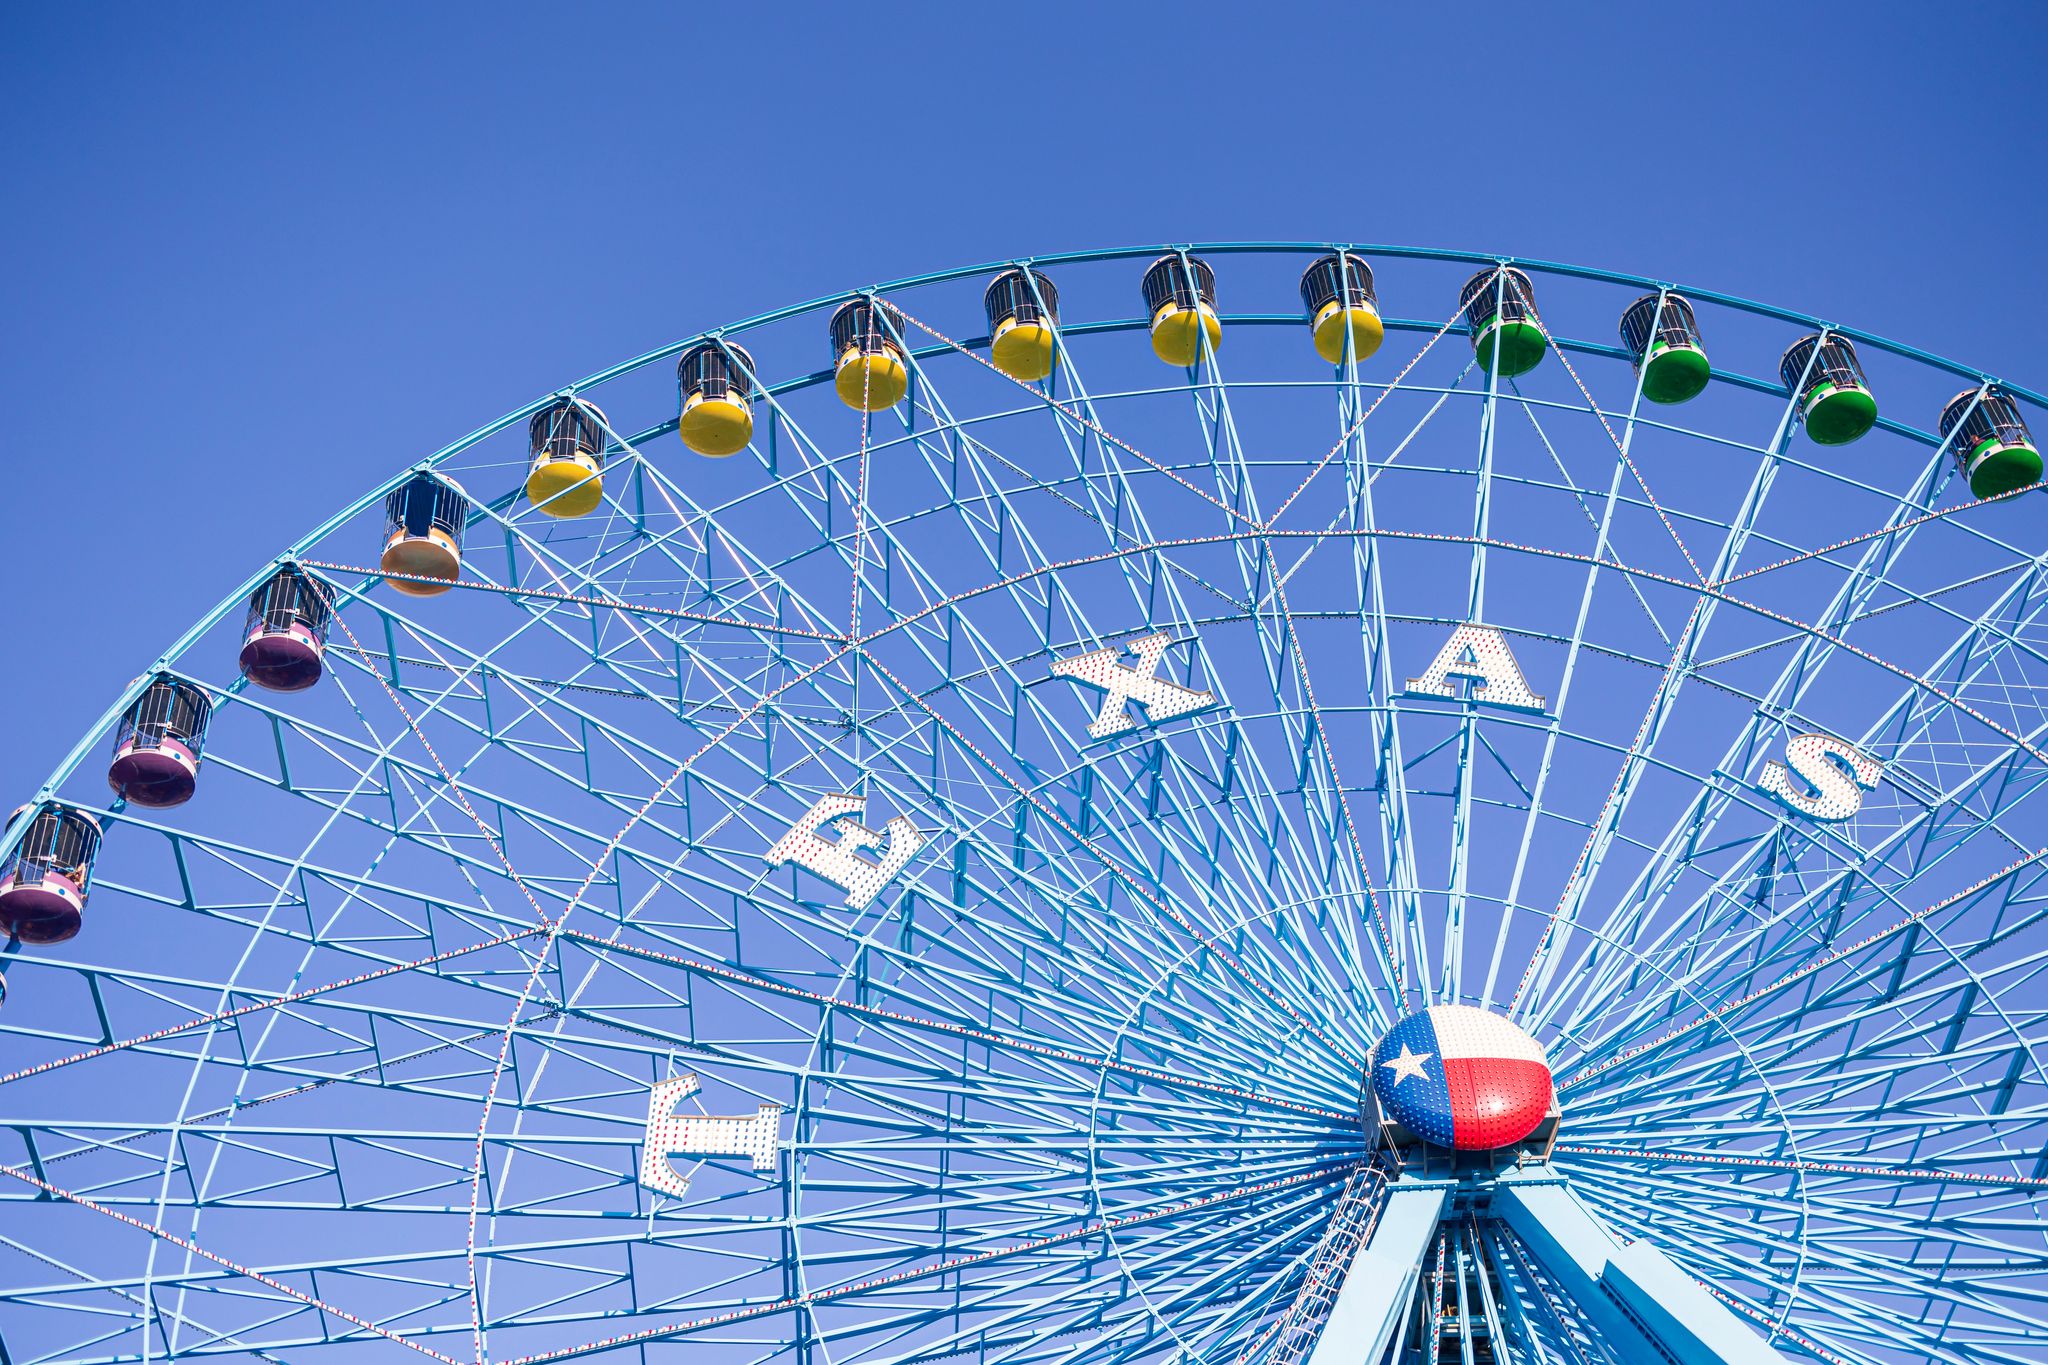 The main ferris wheel at The State Fair of Texas